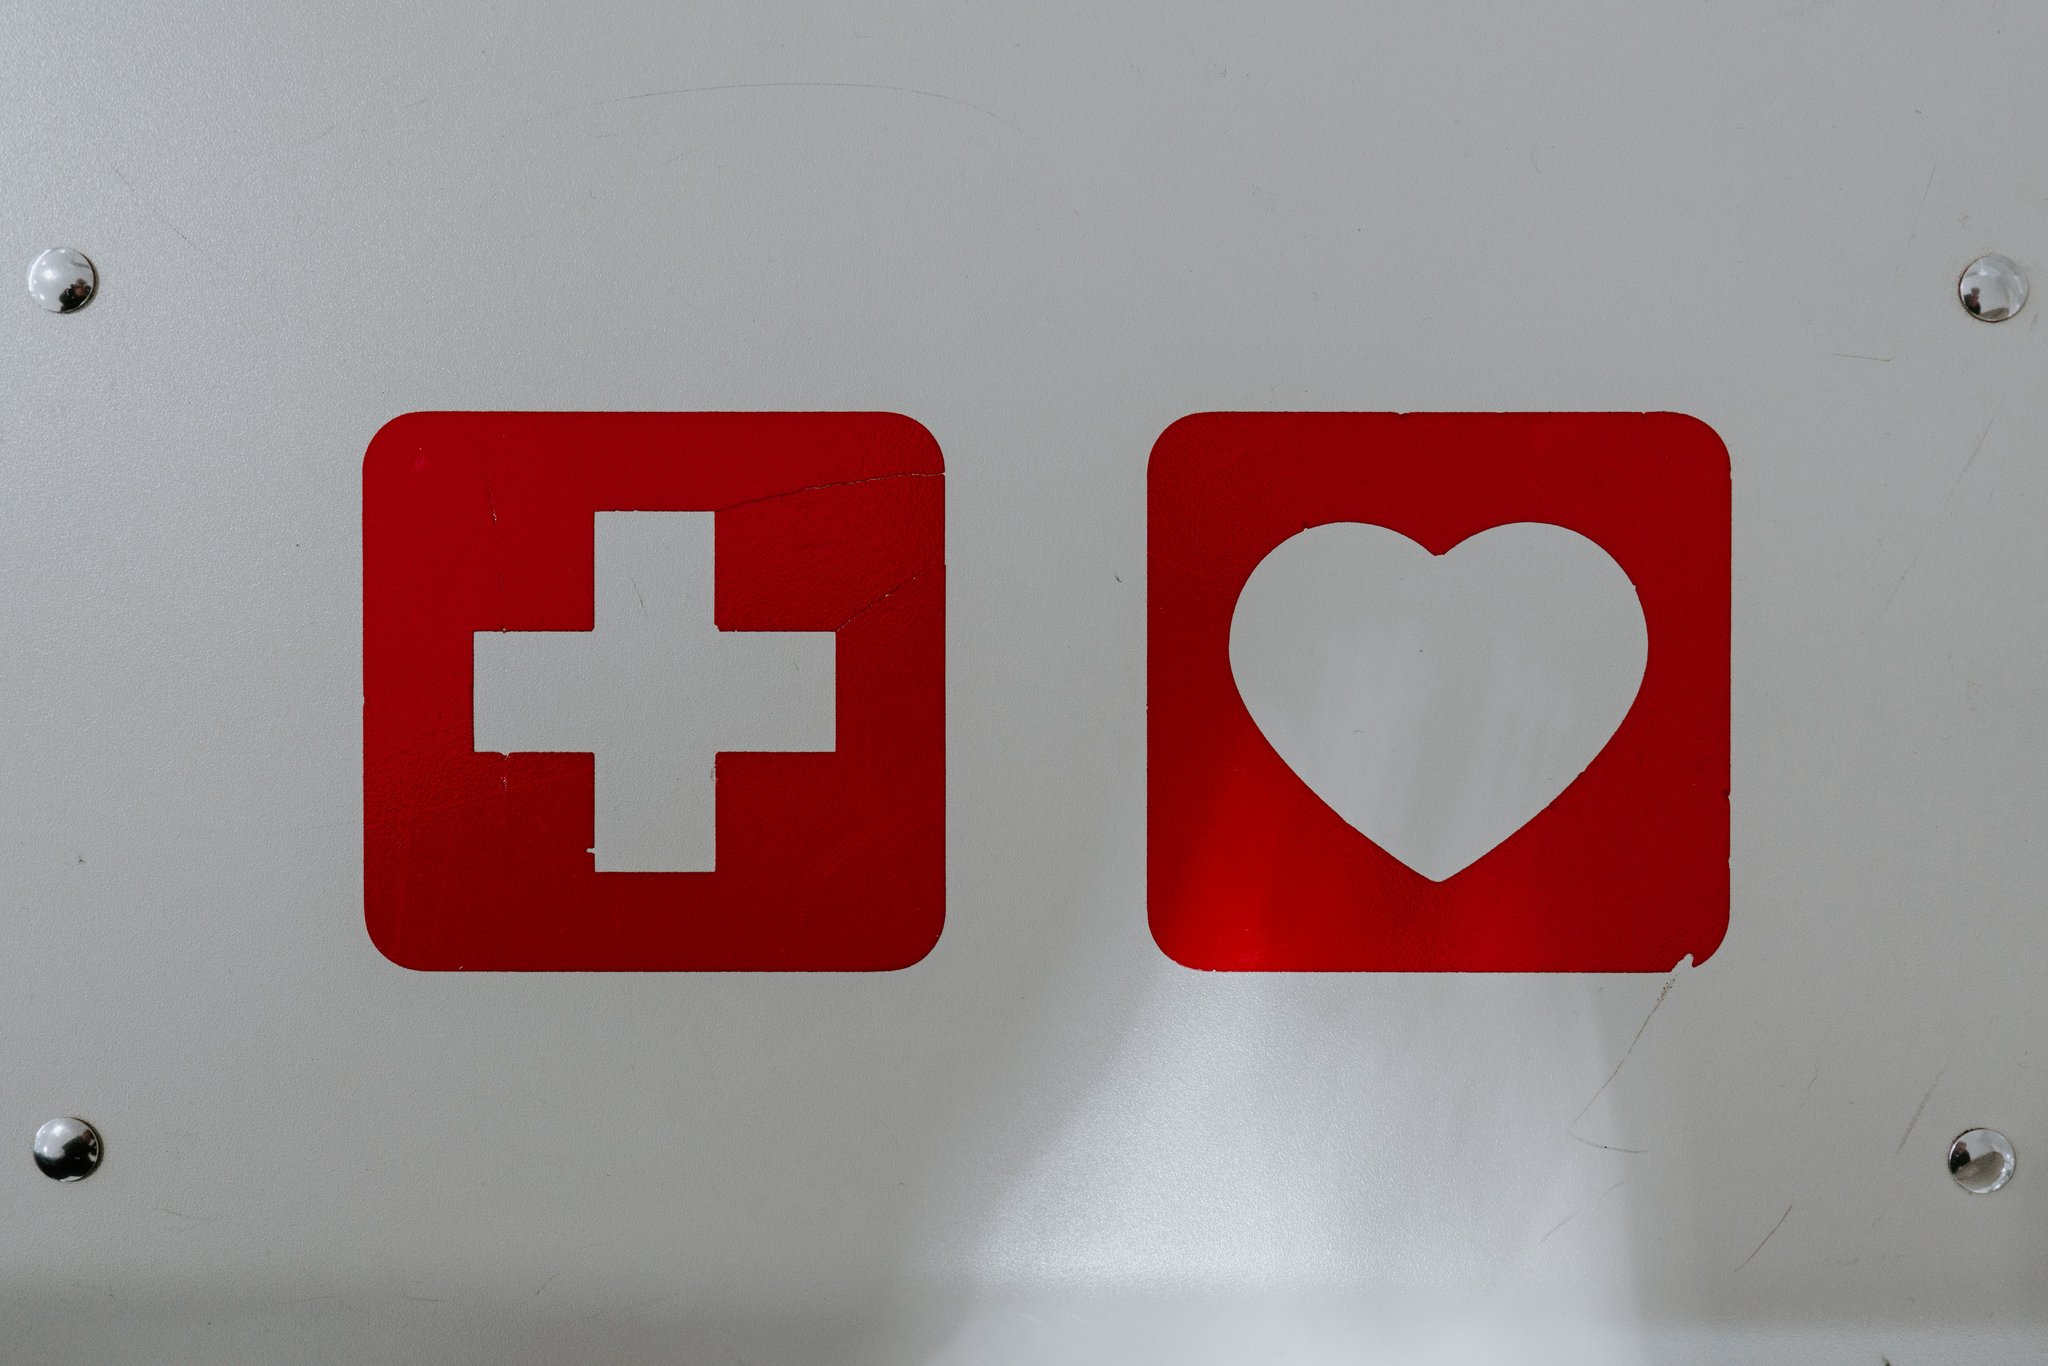 Das Bild zeigt Piktogramme eines roten Kreuzes und eines roten Herzens auf einer weißen Wand